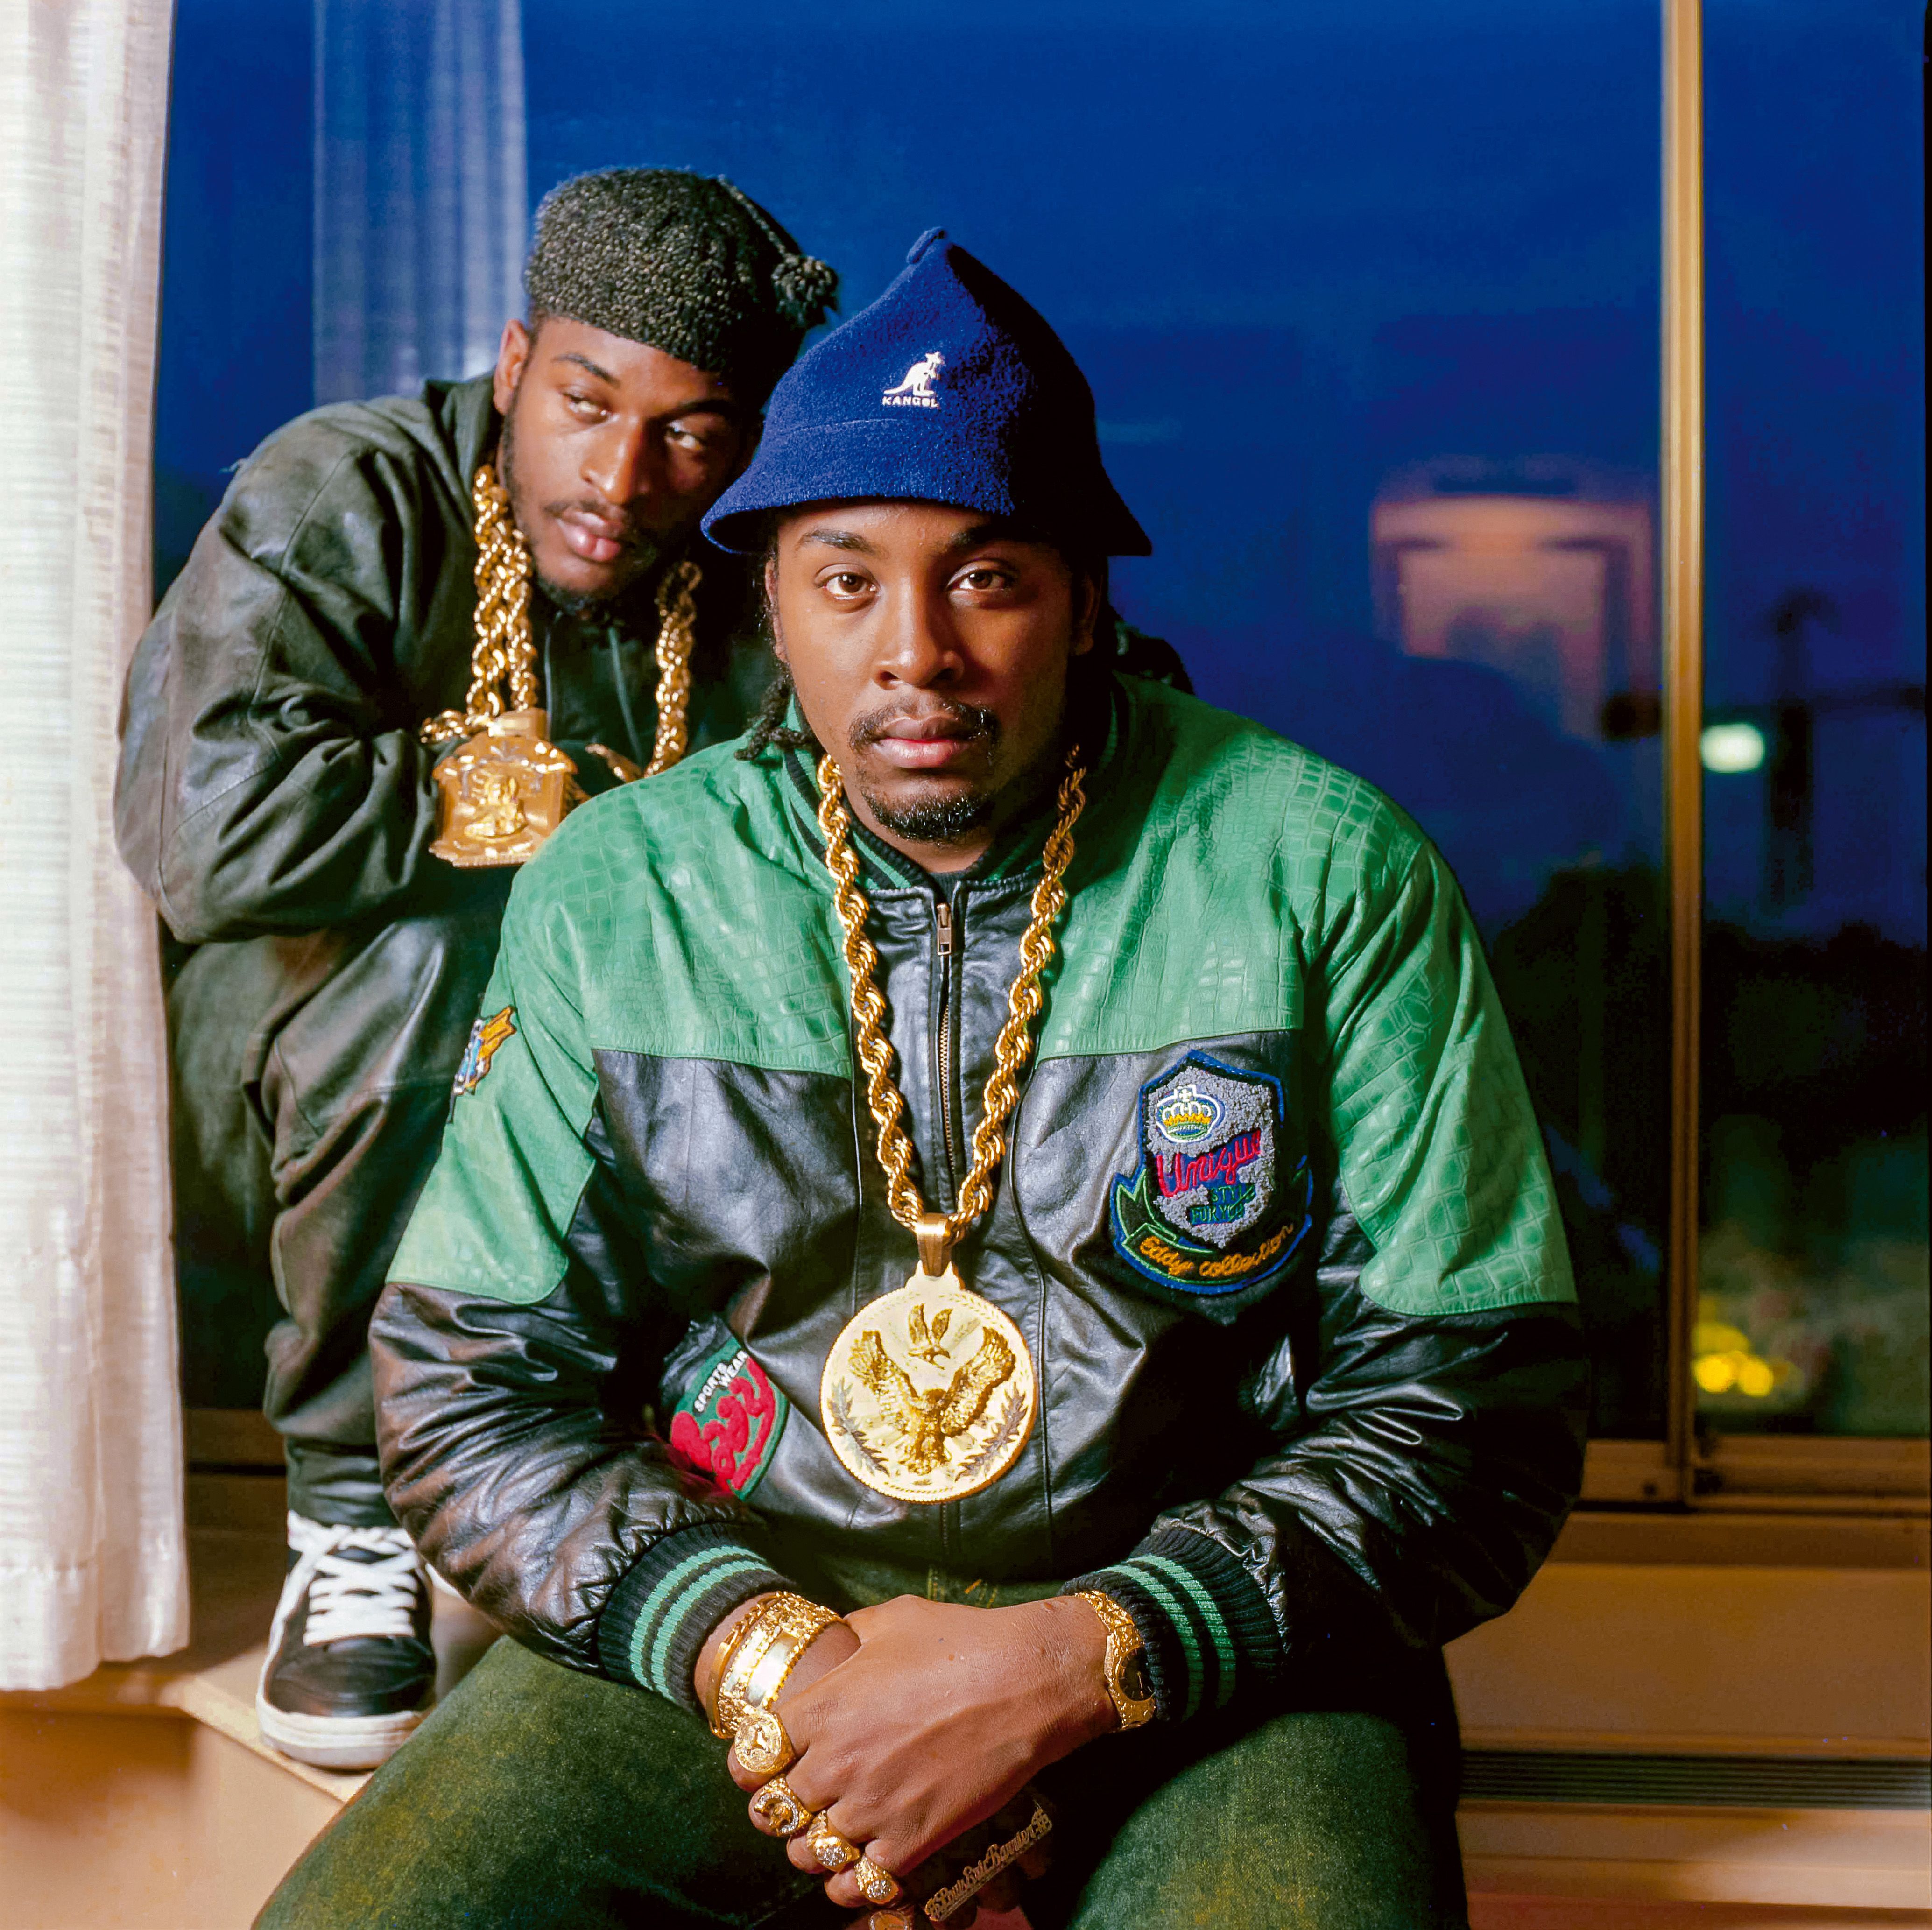 Der Rapper Eric B. sitzt auf einer Fensterbank, hinter ihm befindet sich Rakim hockend auf derselben Bank. Die Hip-Hop-Künstler tragen dicke Goldketten, Armbänder und Ringe